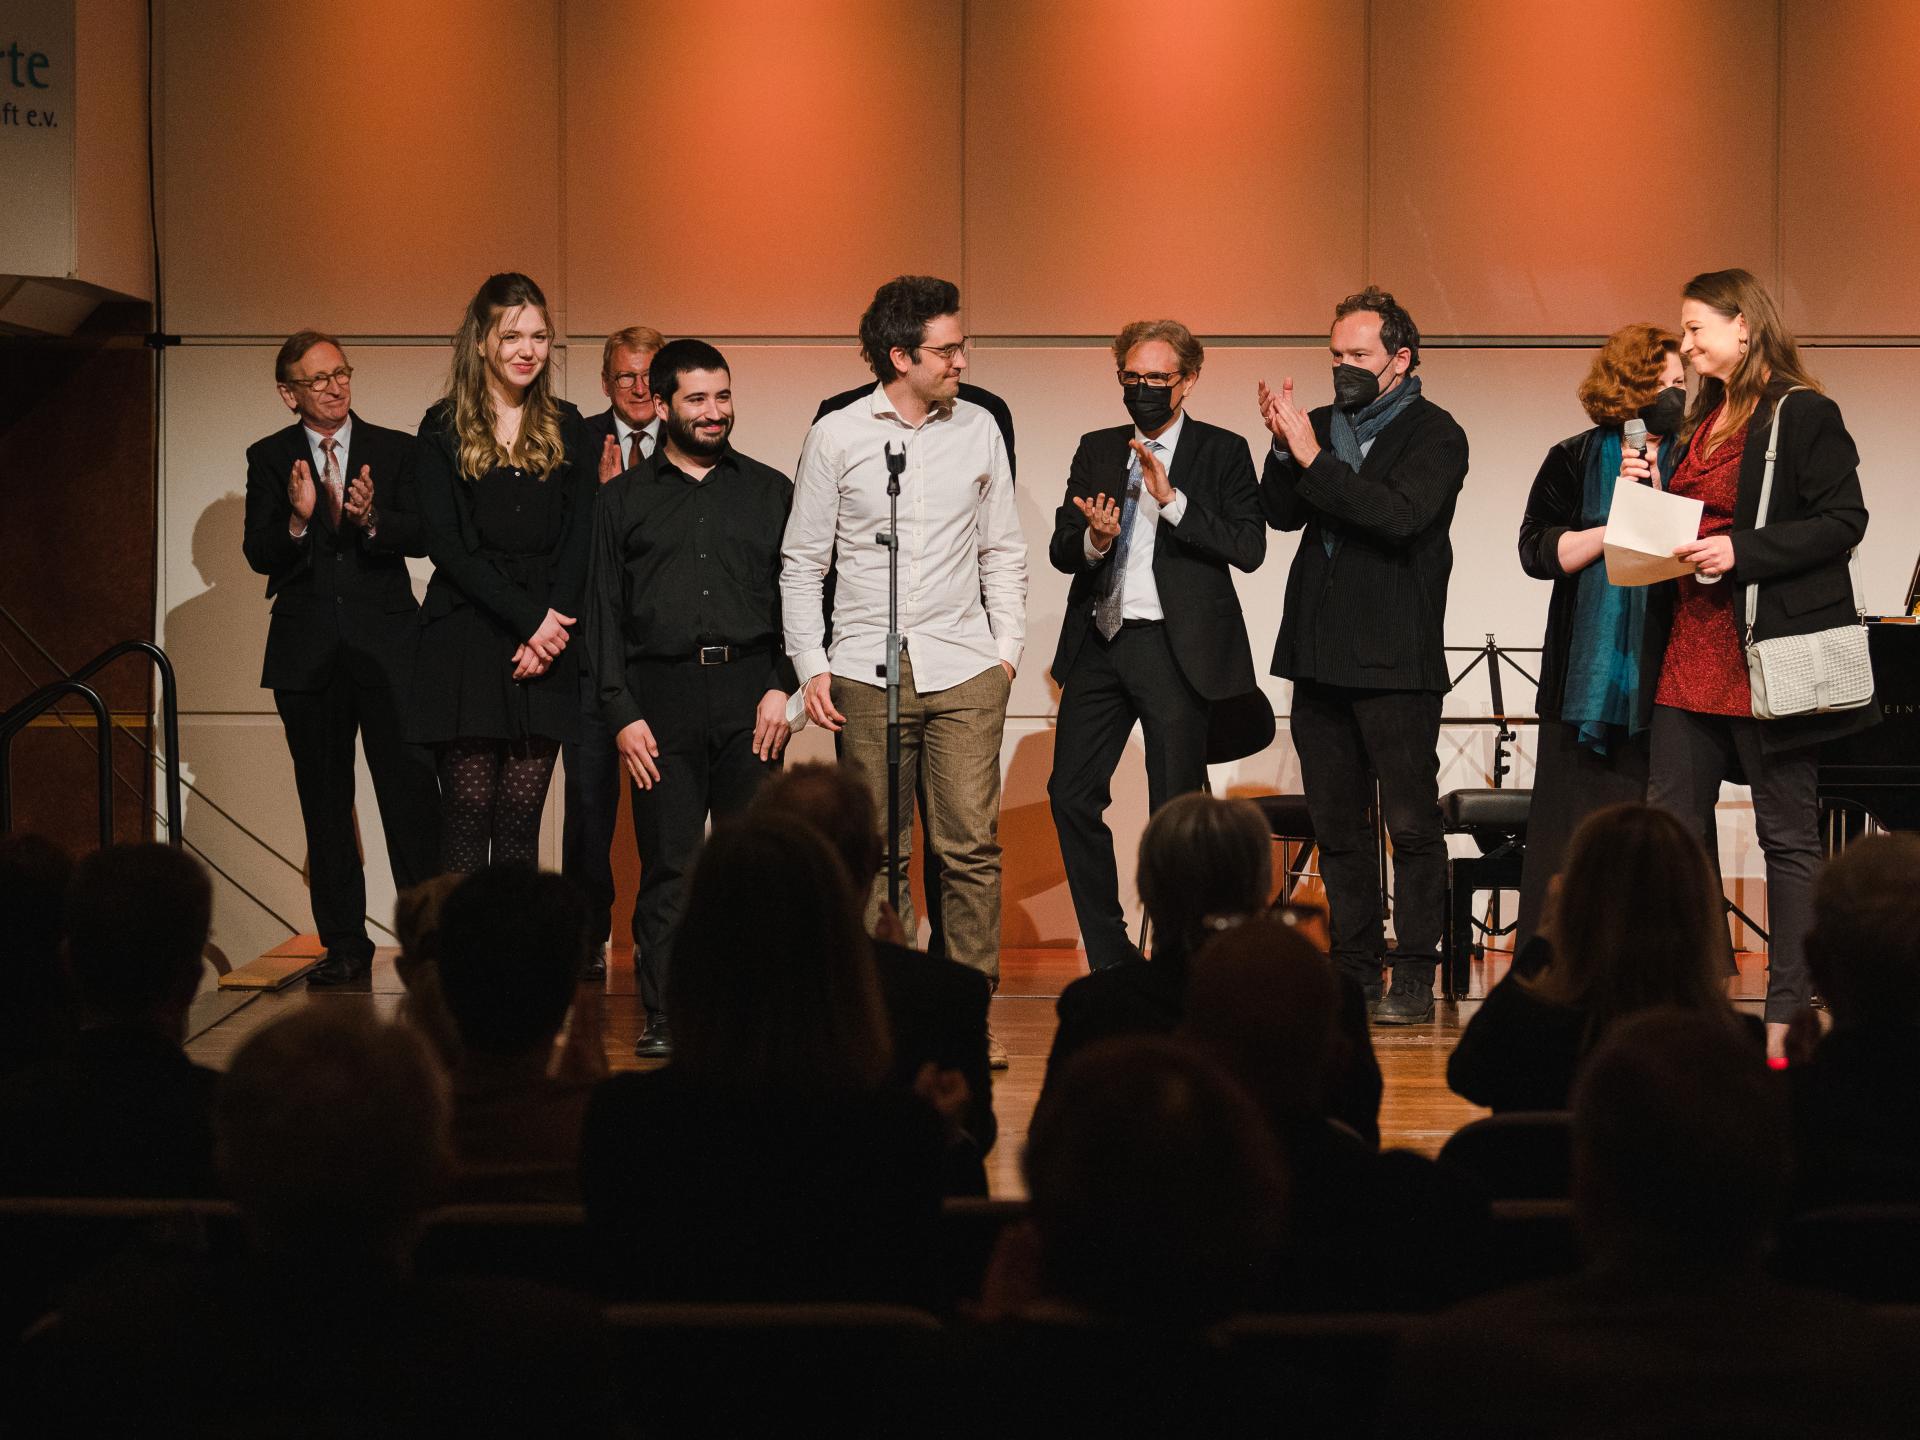 Das Trio Orelon bei der Preisverleihung des Schumann-Kammermusikpreises 2022 auf der Bühne mit der Jury.